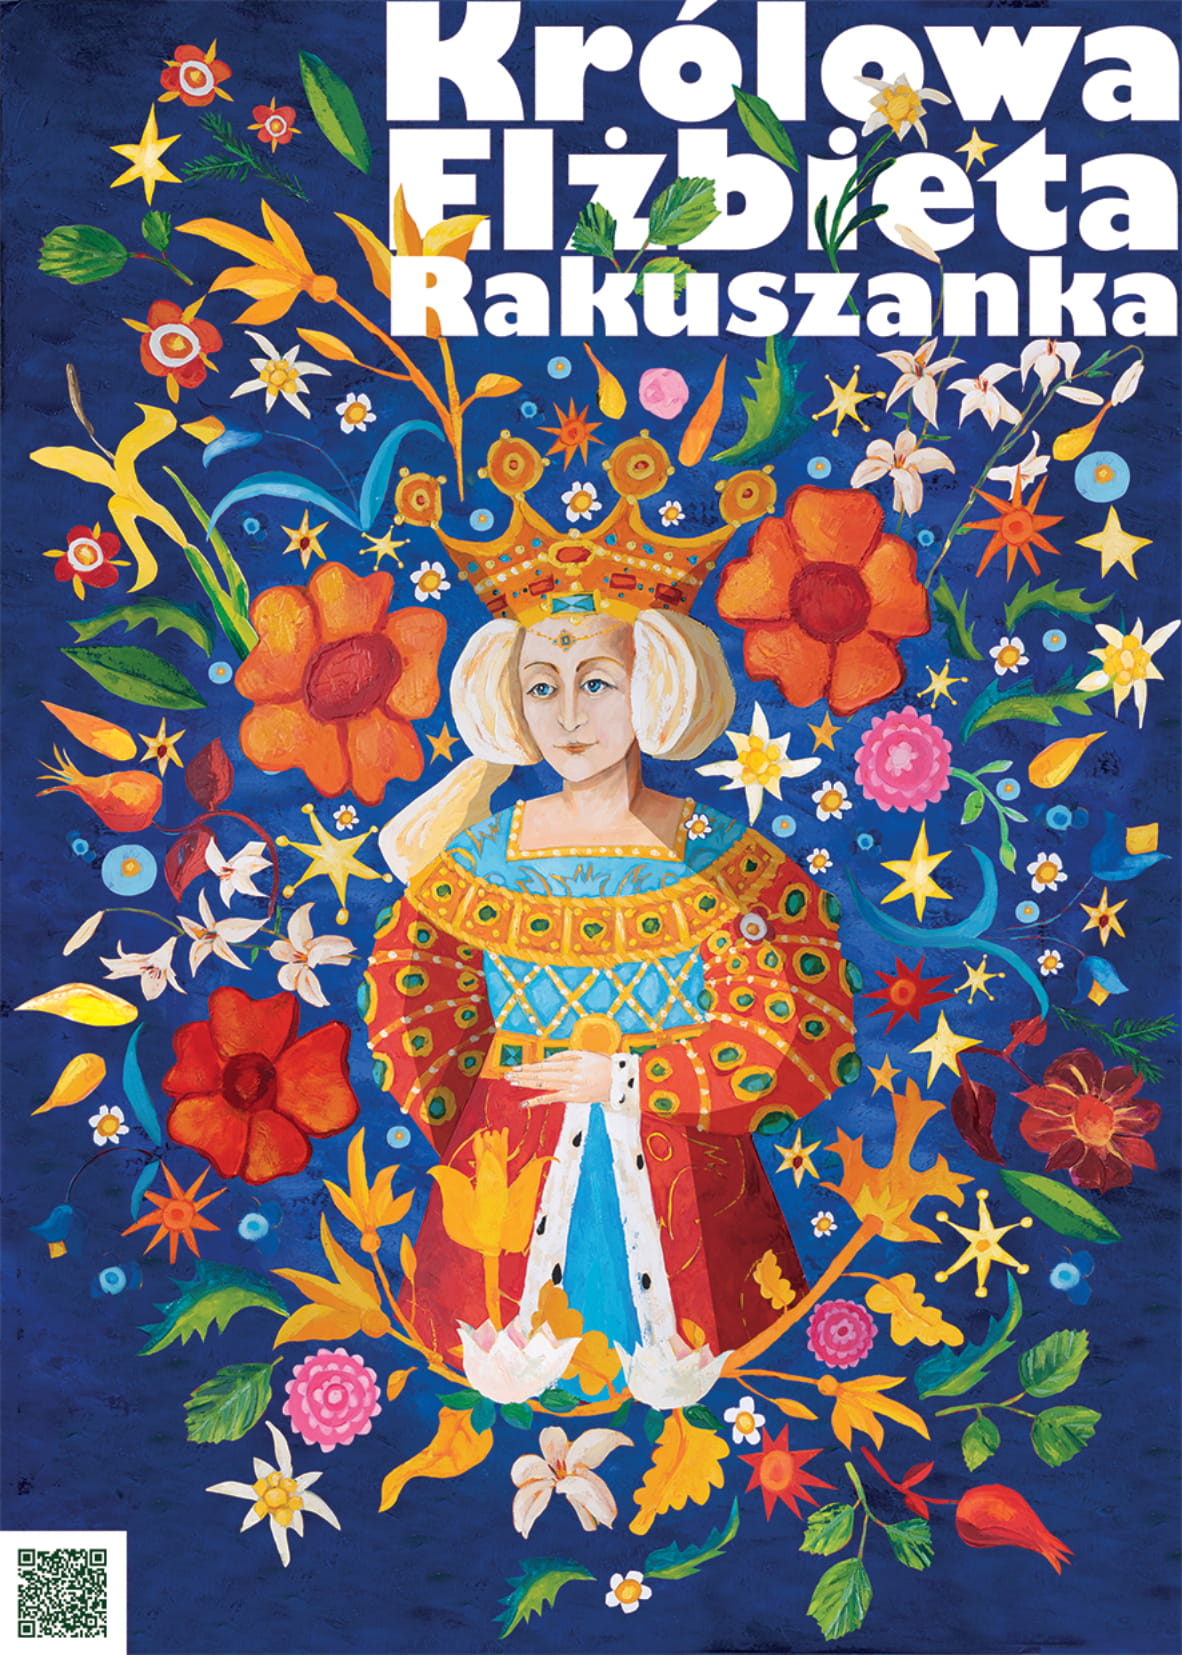 Projekty królewskich murali - Elżbieta Rakuszanka